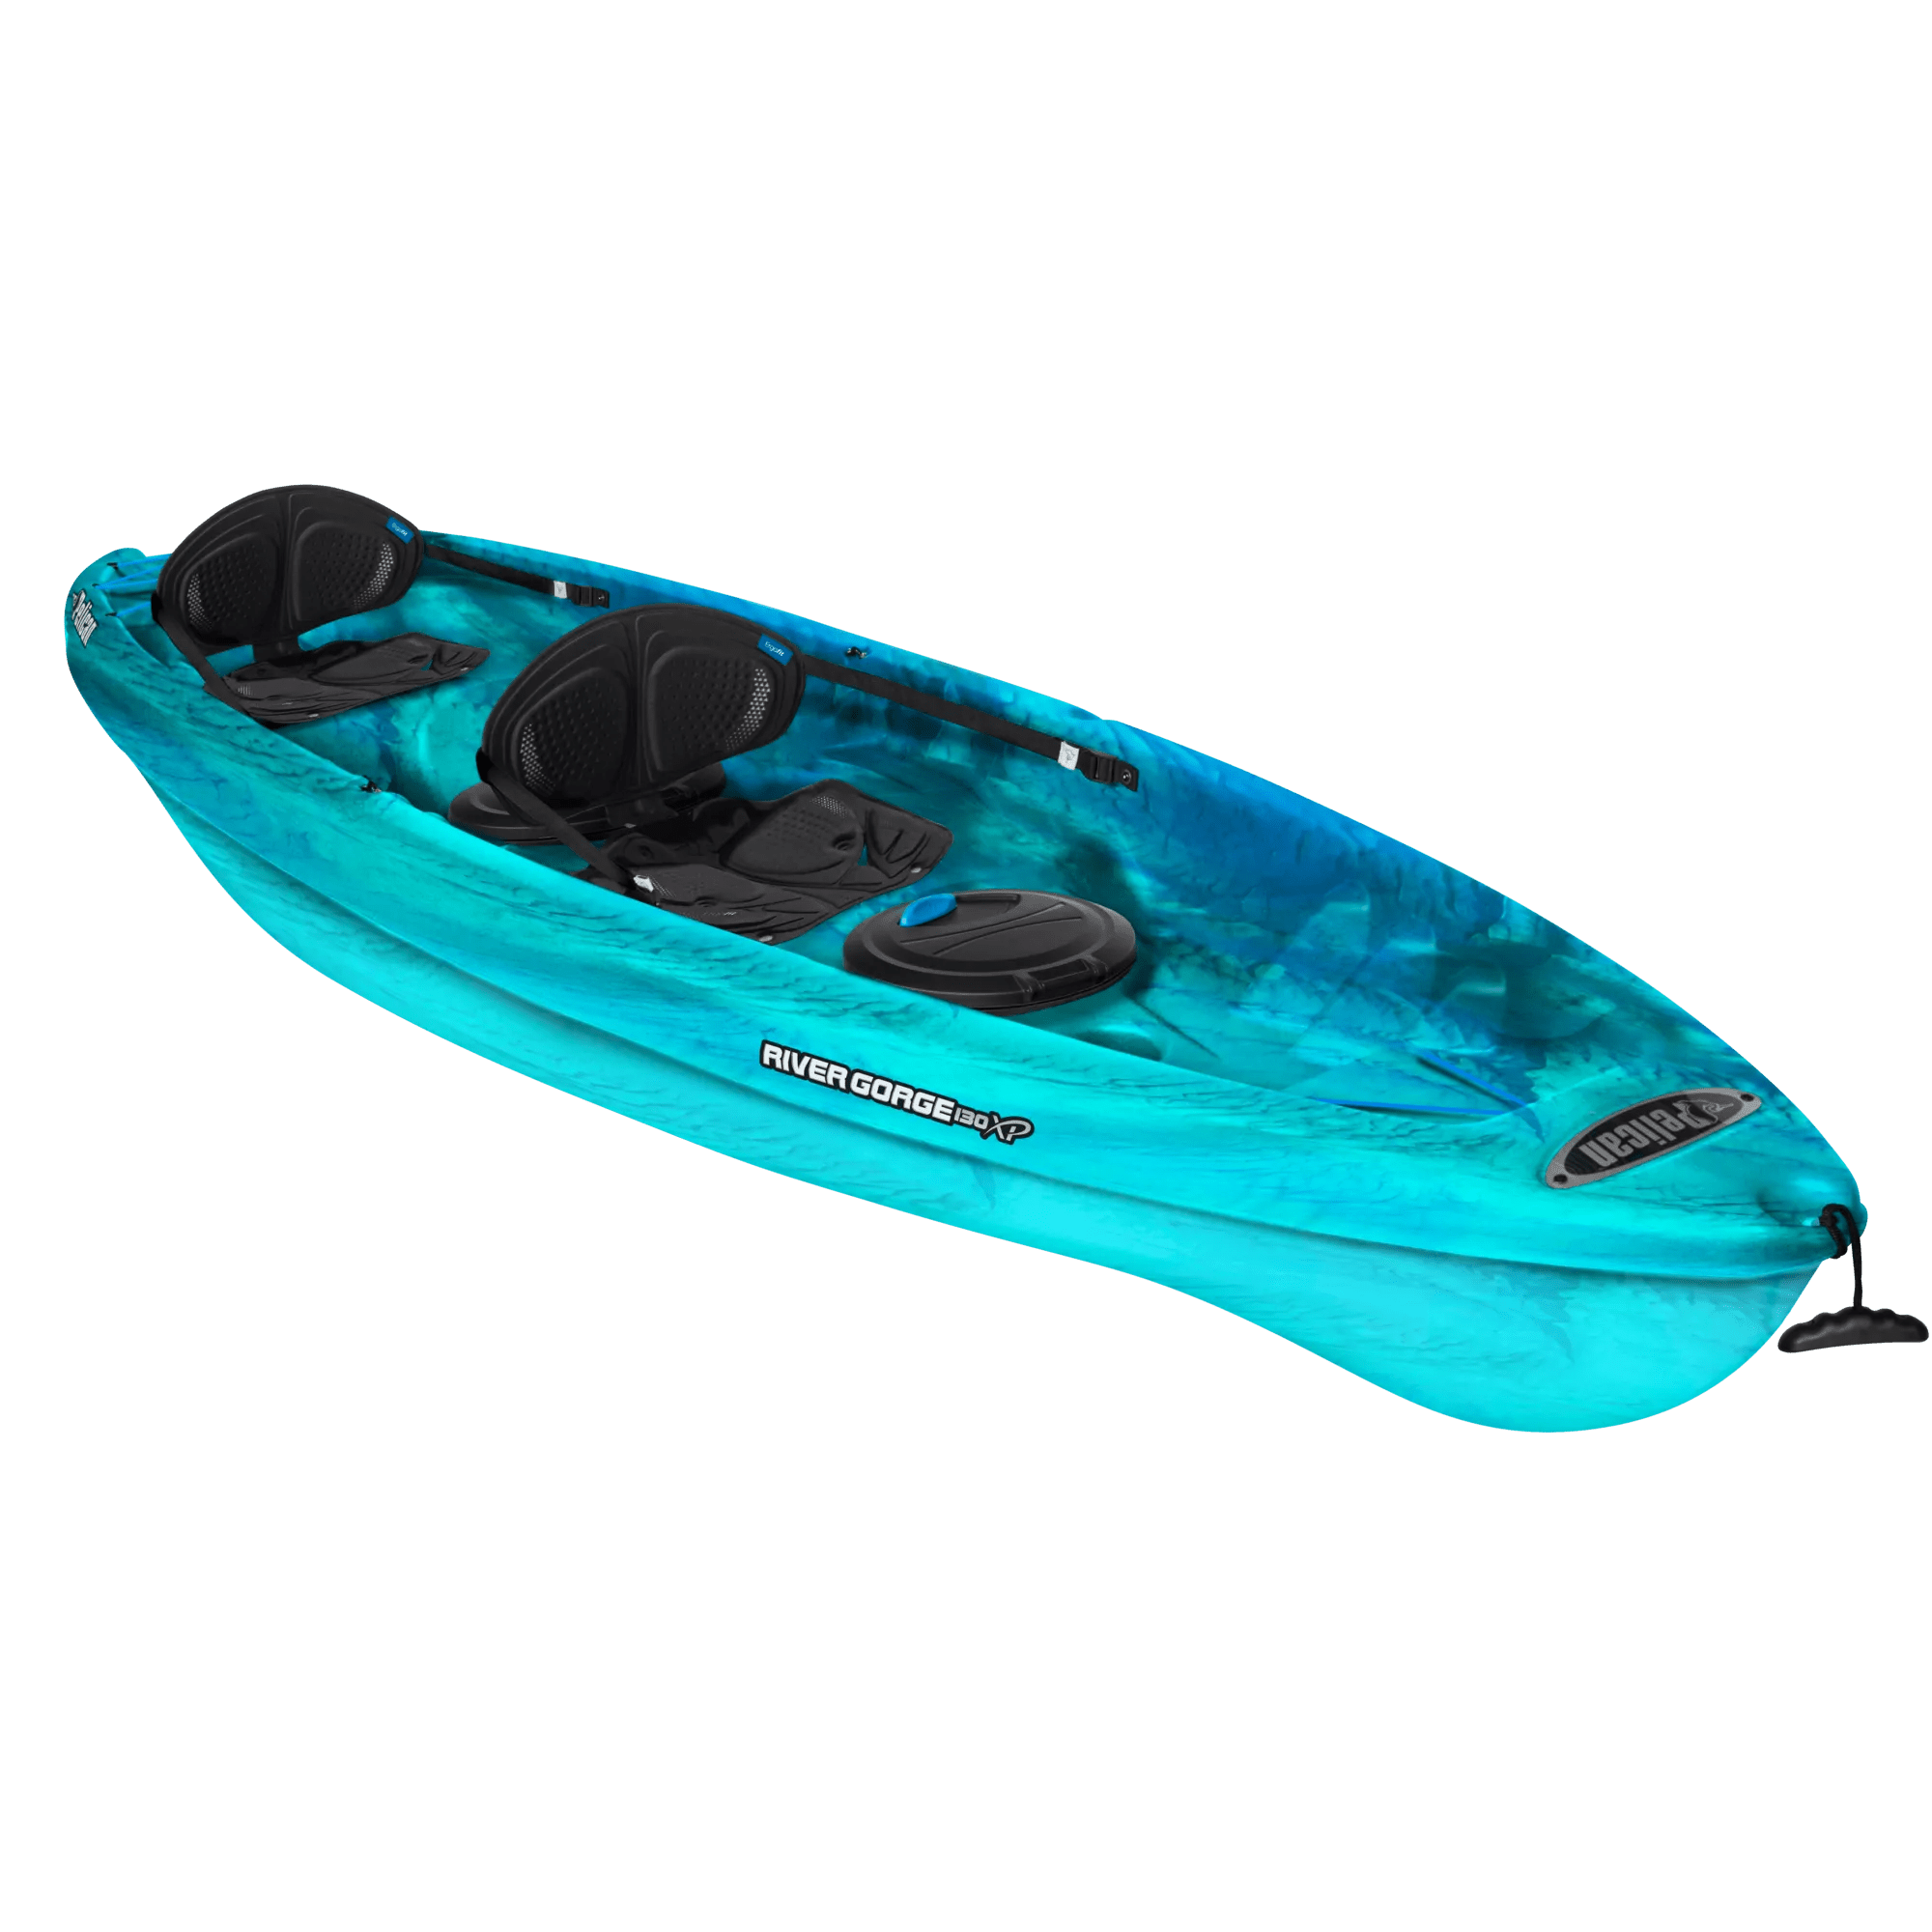 PELICAN - River Gorge 130XP Tandem Recreational Kayak - Aqua - KUF13P200-00 - ISO 